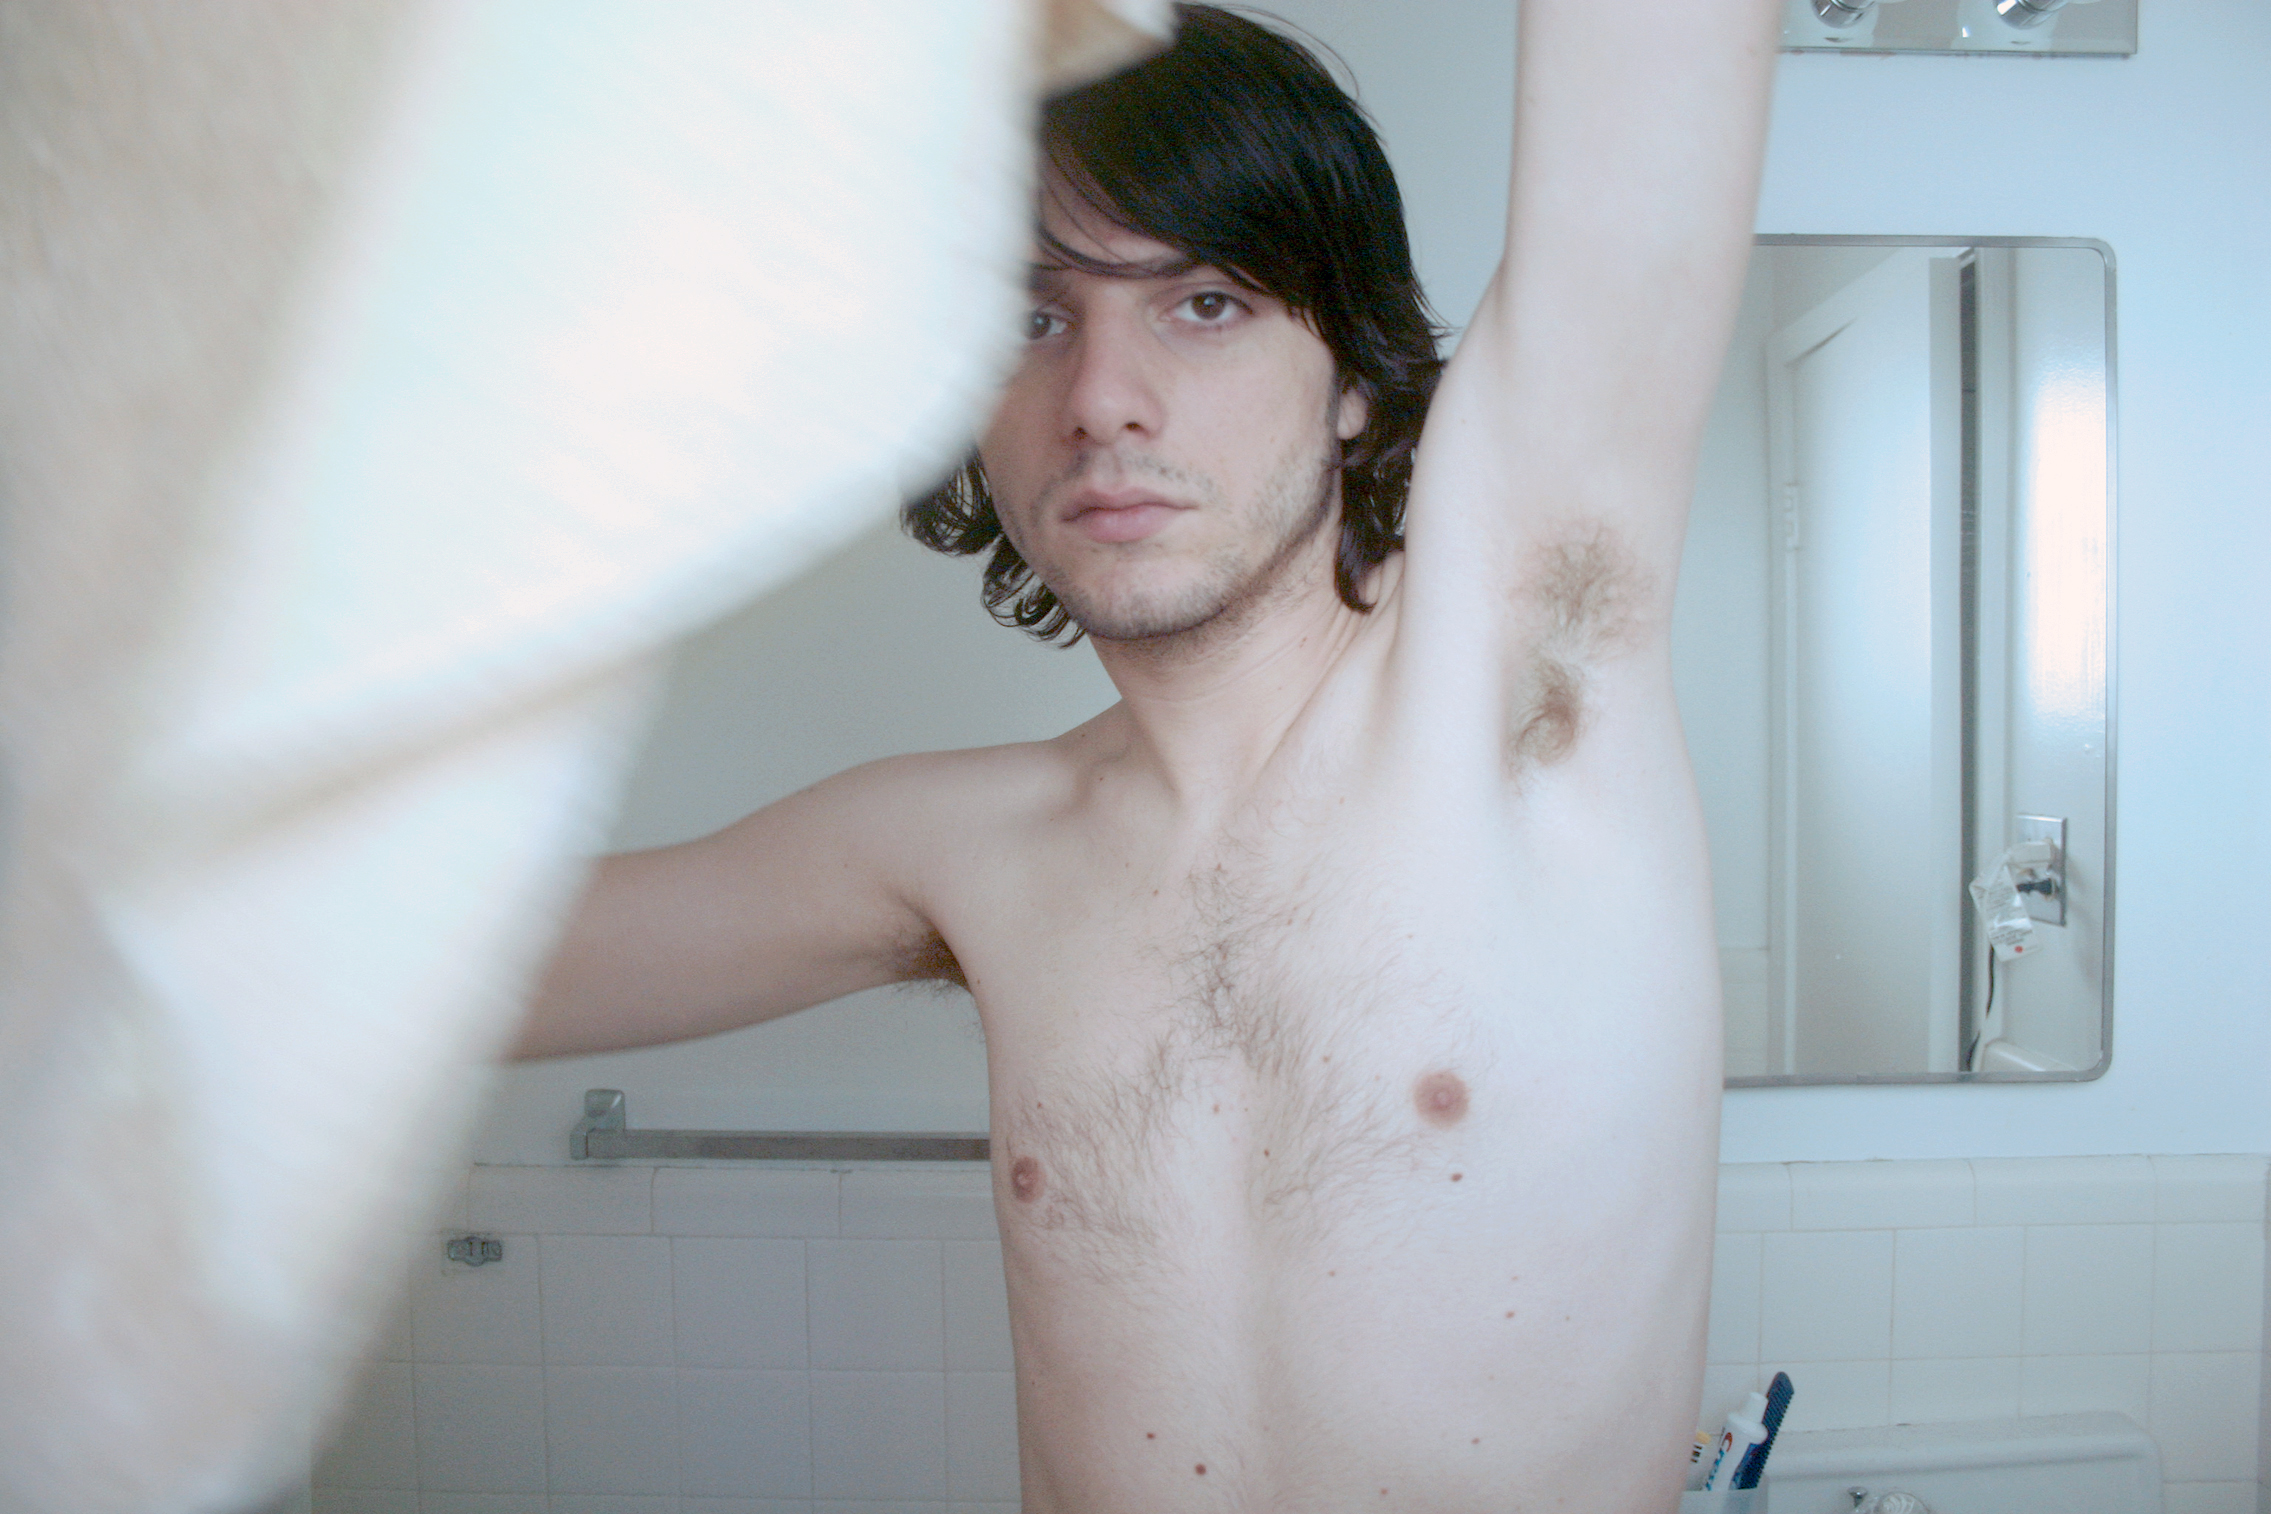 Shirtless Bathroom, Selfie, 2005